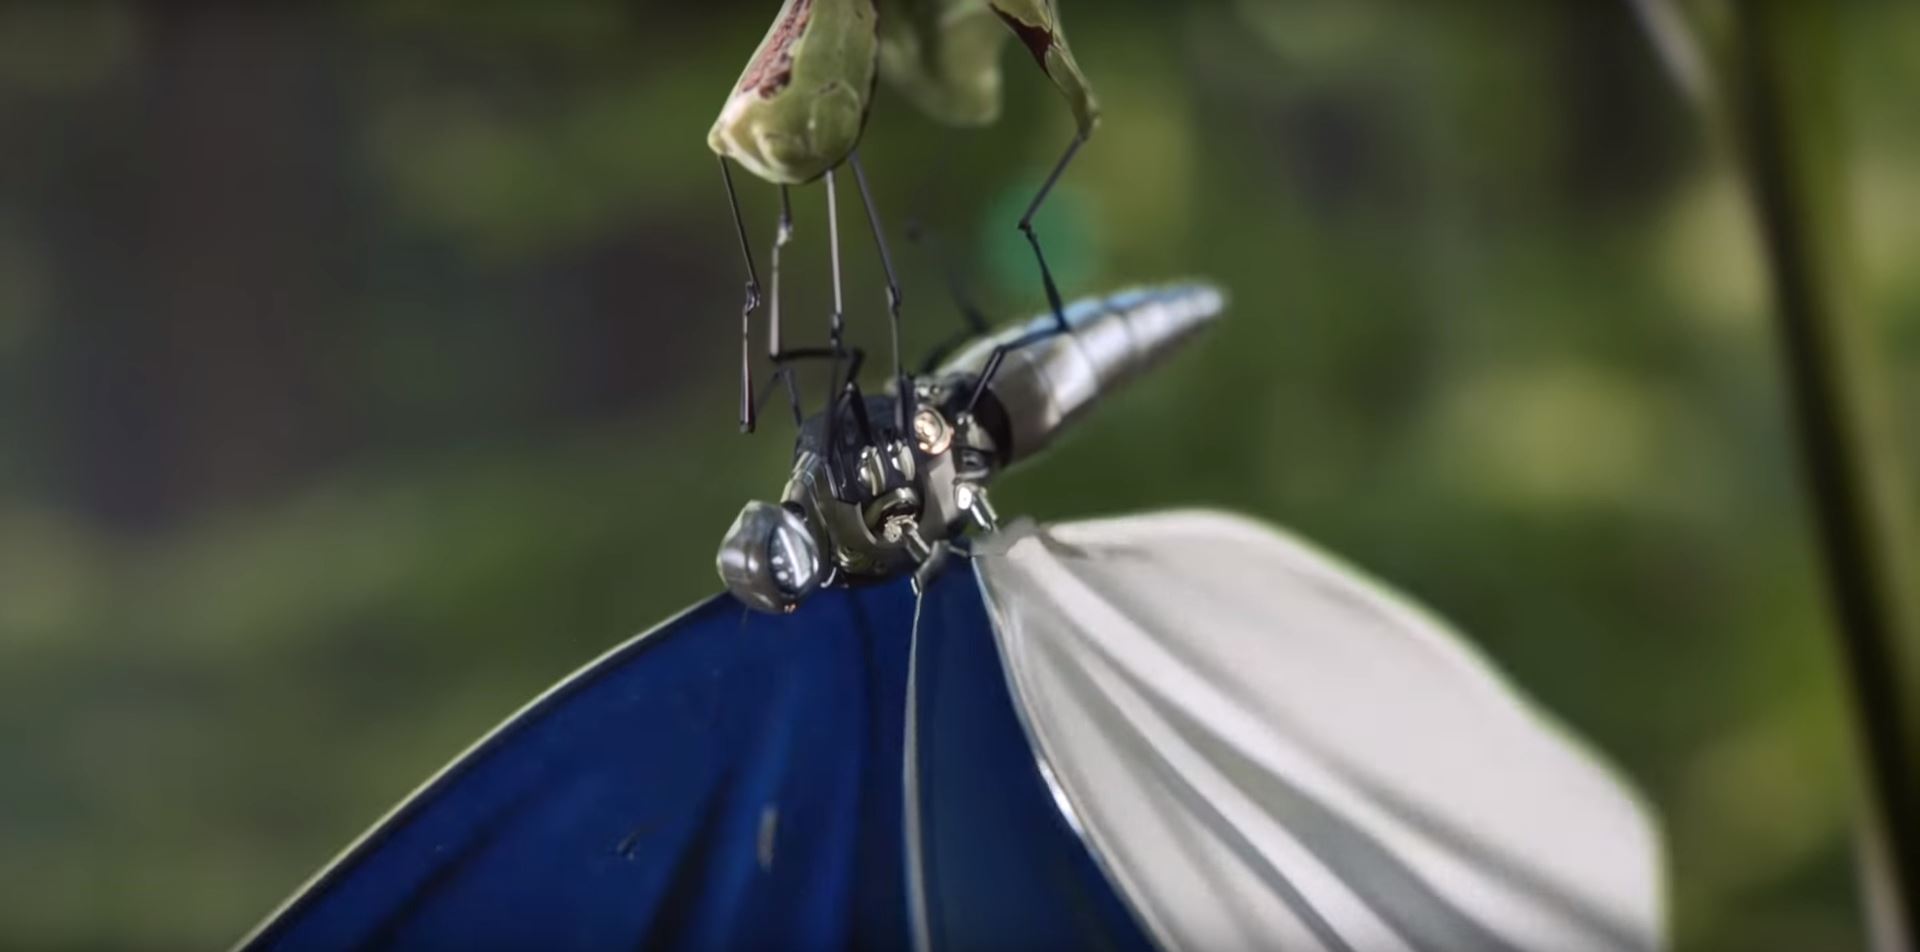 Mechanical Butterflies Brighten Up London in New Ford Spot